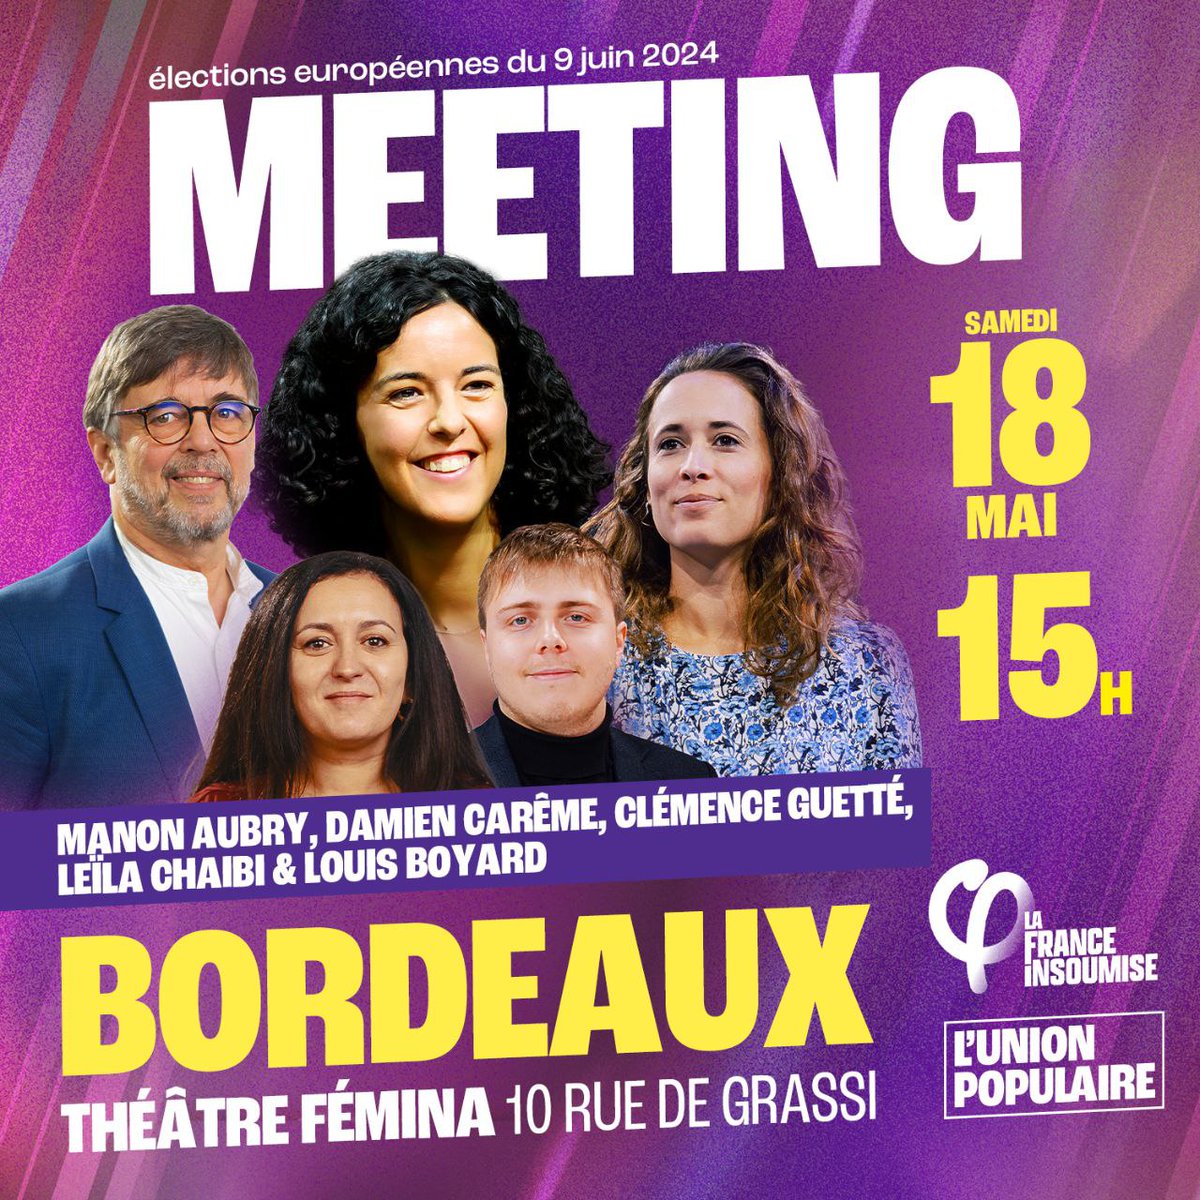 Rendez-vous ce samedi à Bordeaux ! Nous tiendrons un grand meeting à 15H au Théâtre Fémina avec @ManonAubryFr, @LouisBoyard, @DamienCAREME et @leilachaibi ! Venez nombreux !